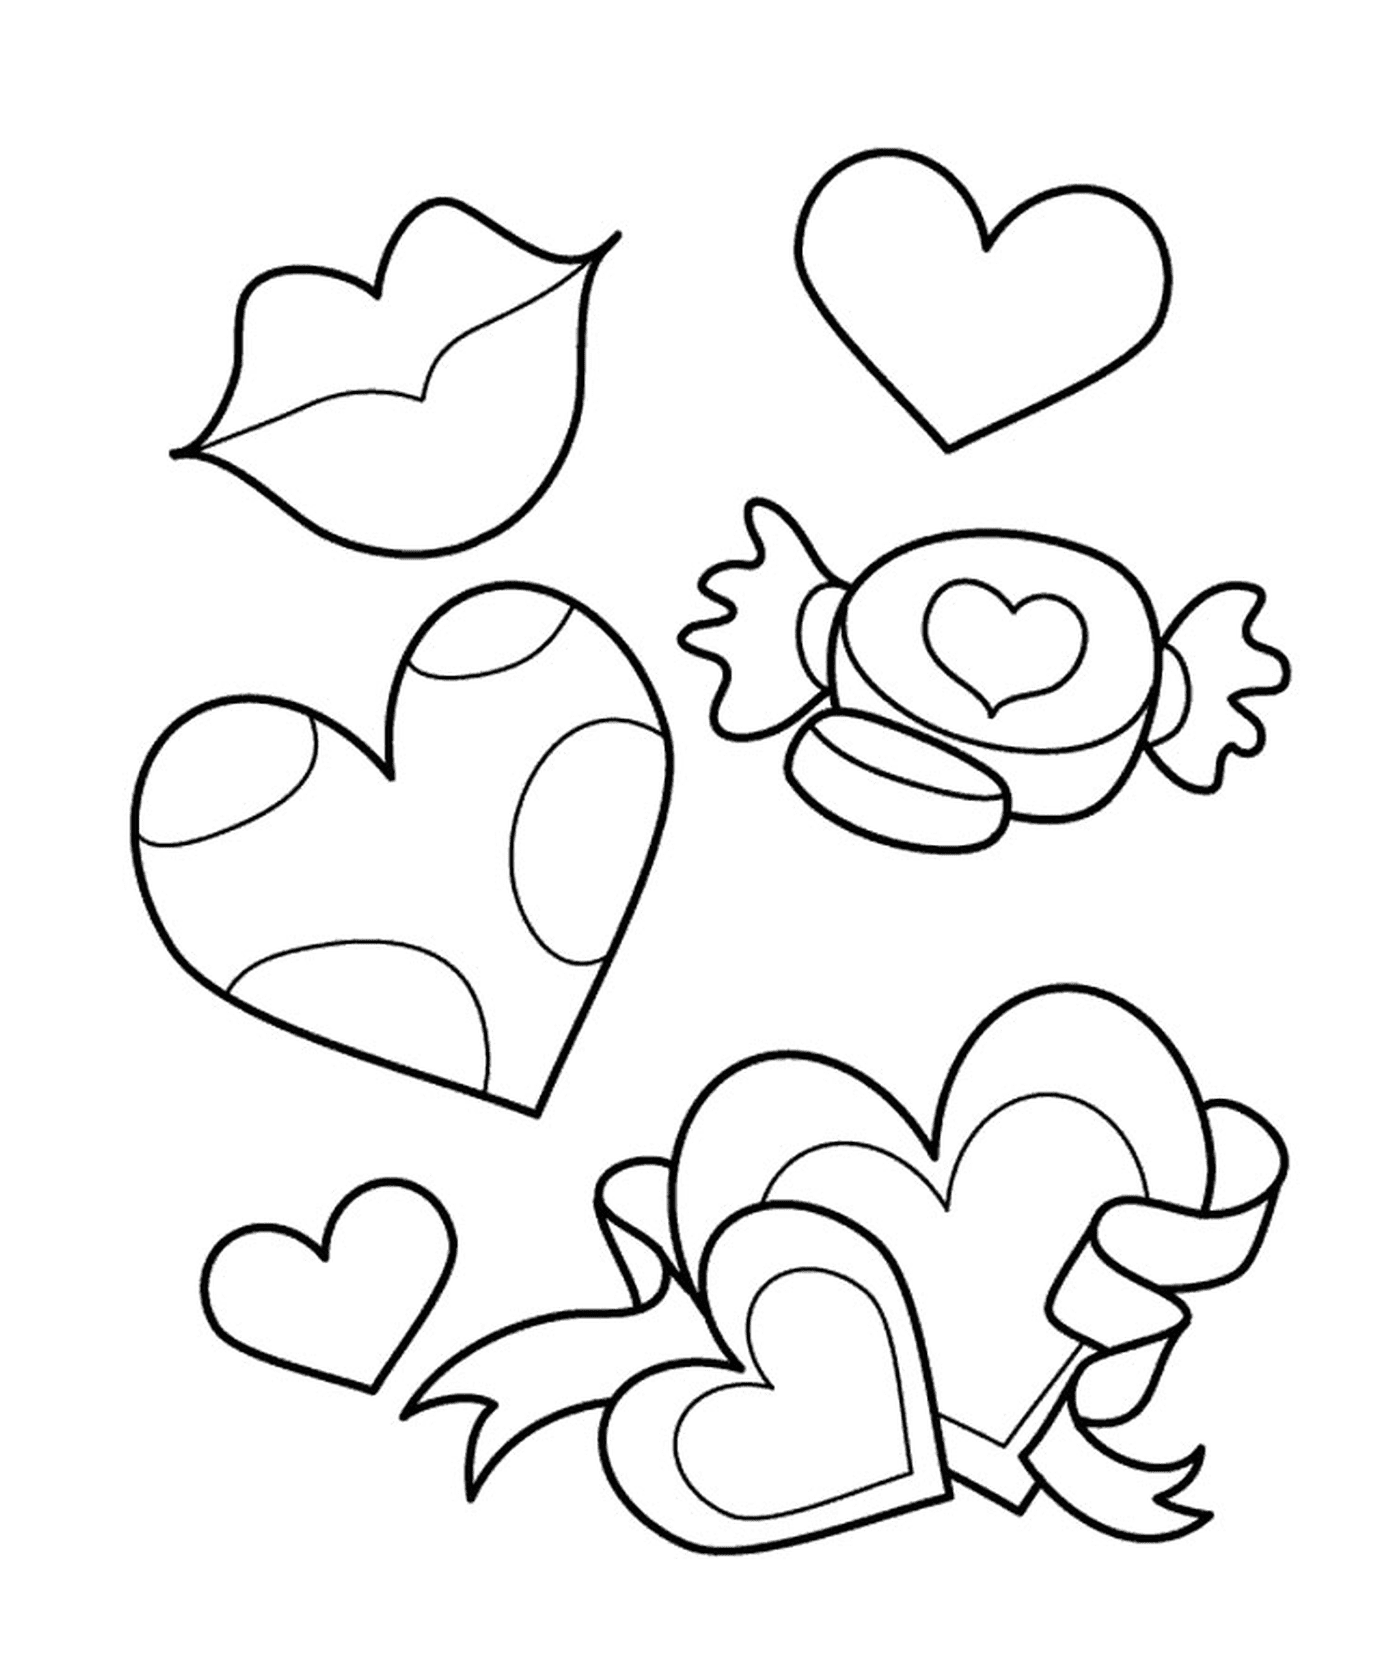   Une variété de formes et de tailles de cœurs 